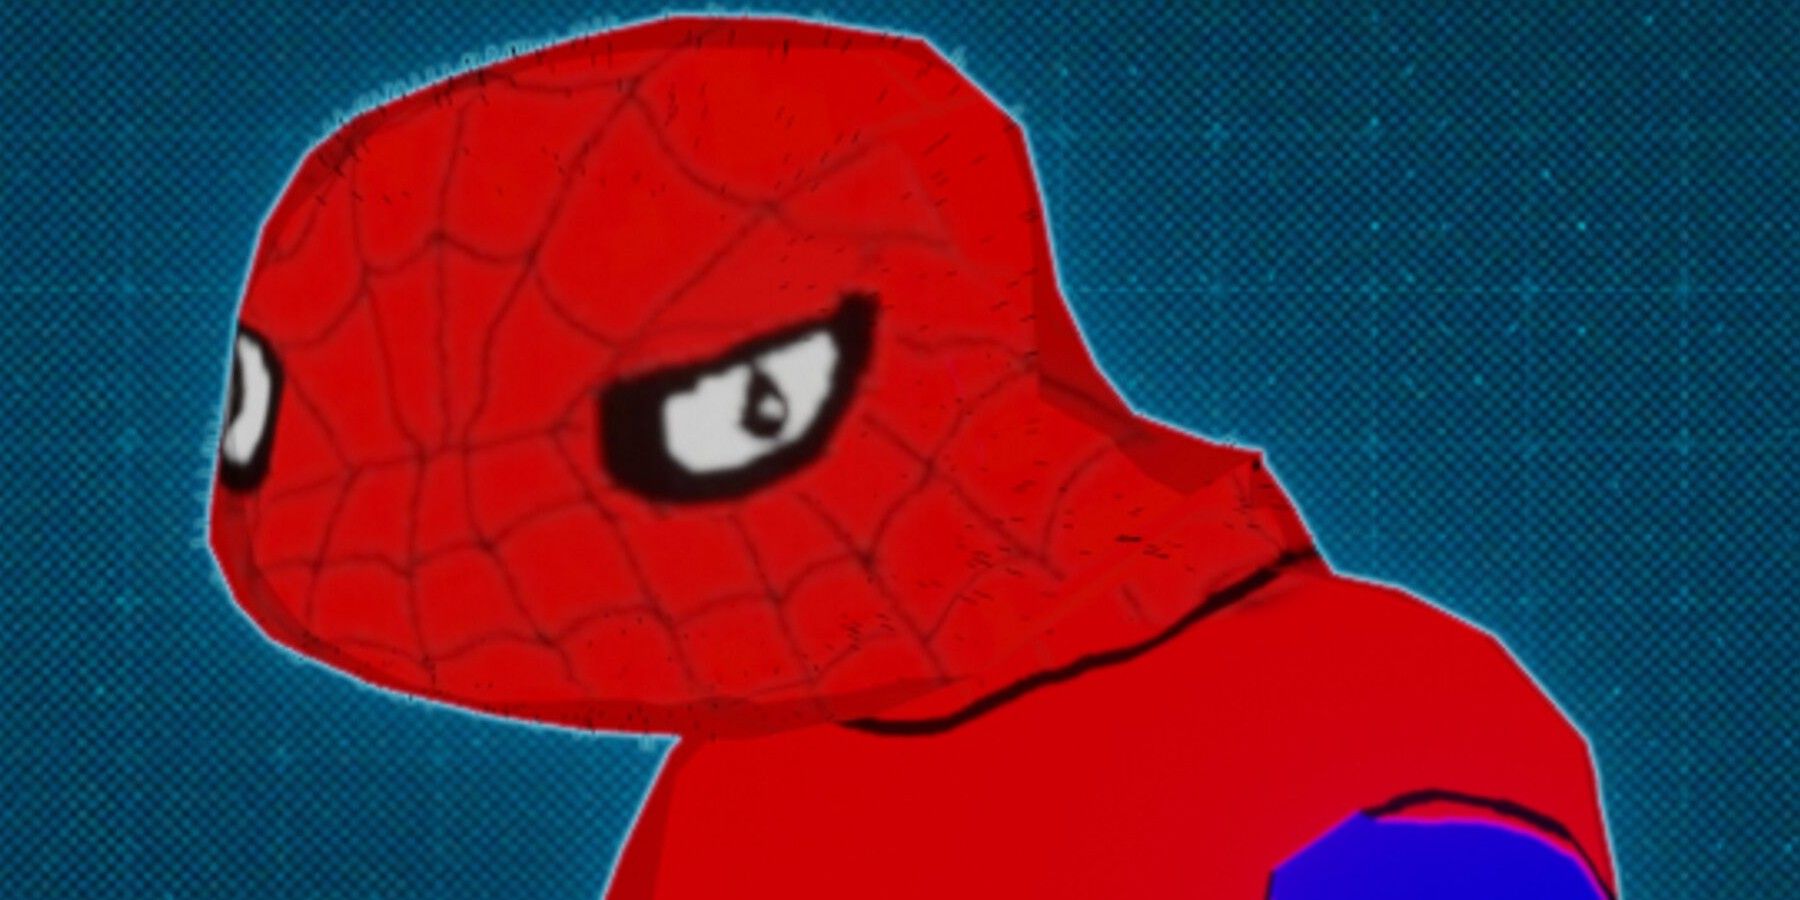 spooder man for marvel's spider-man